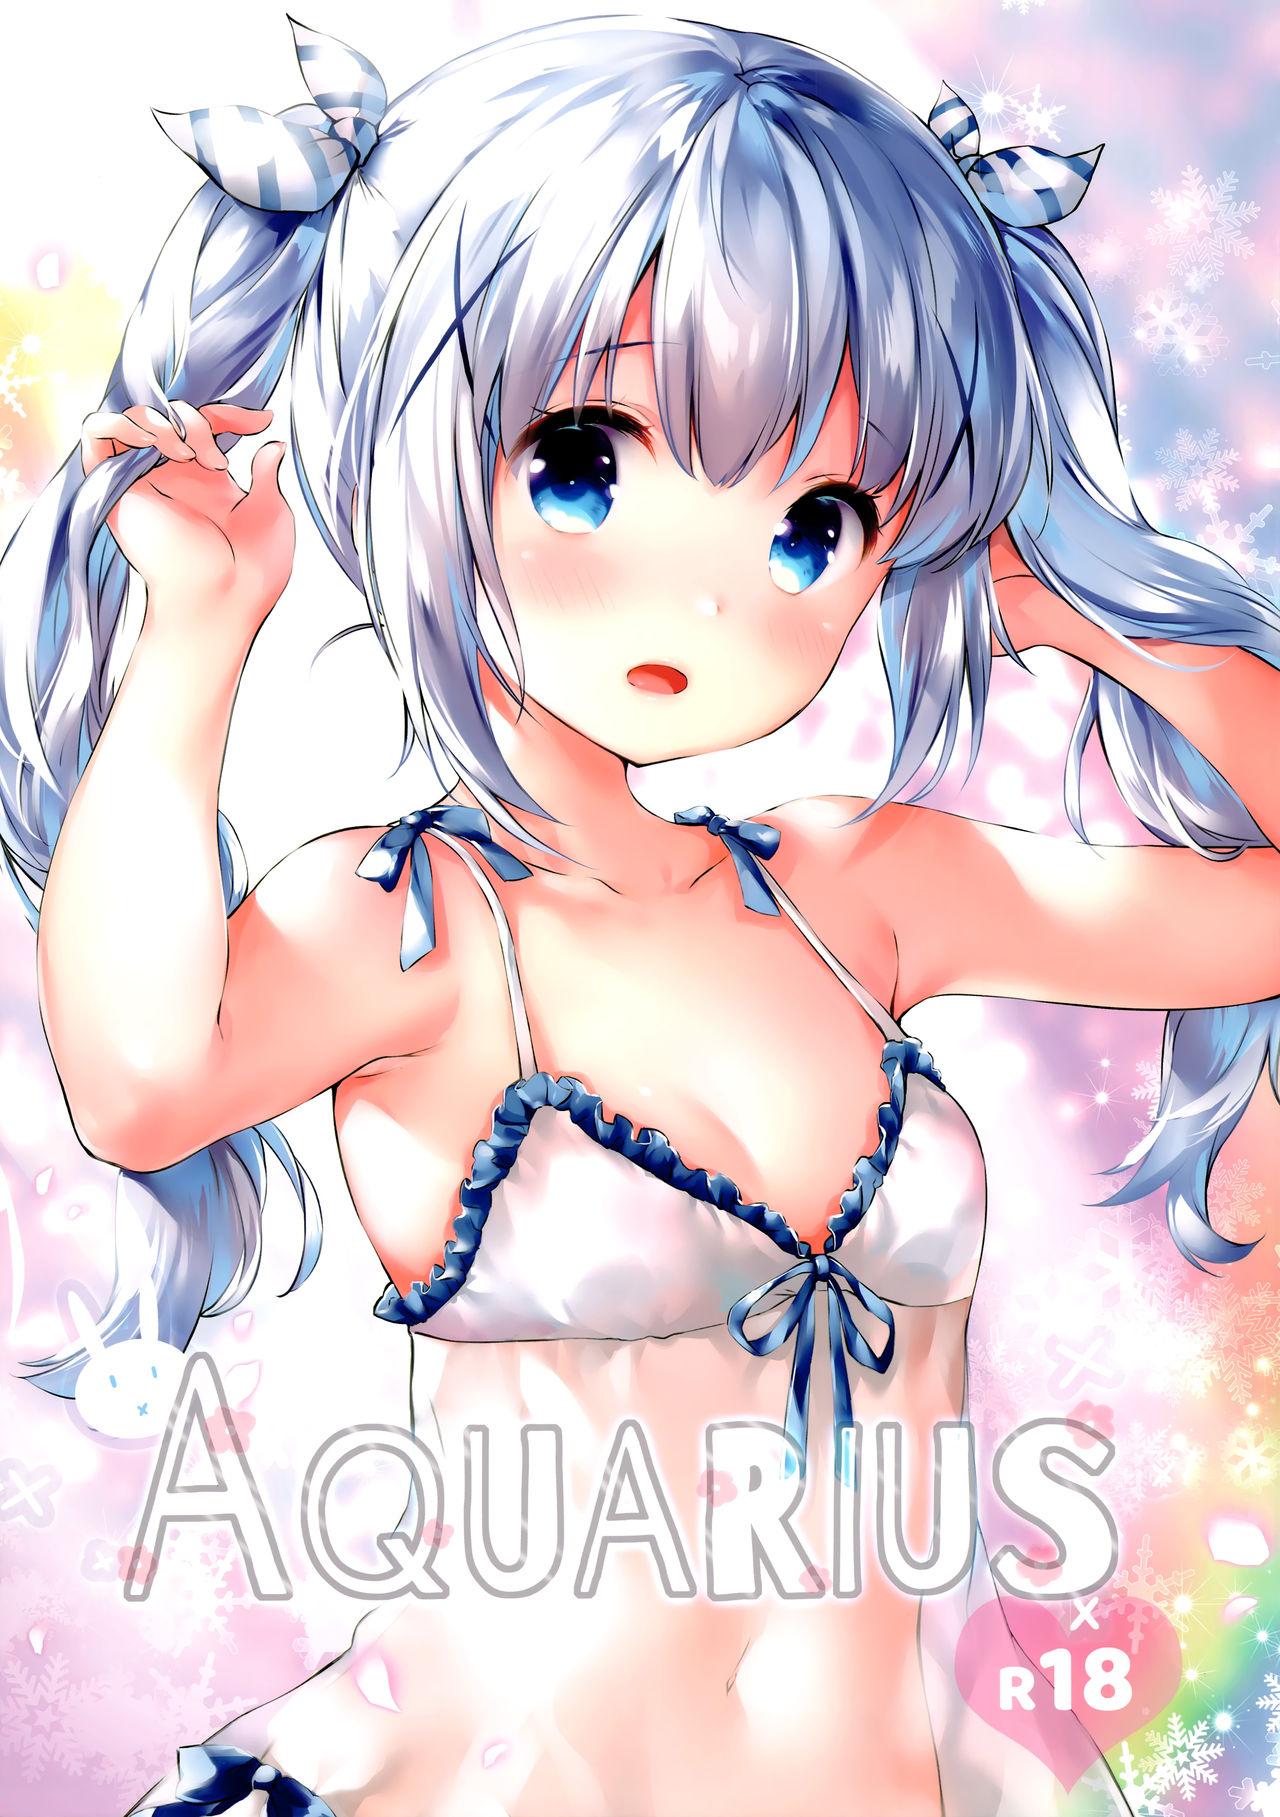 Aquarius 1